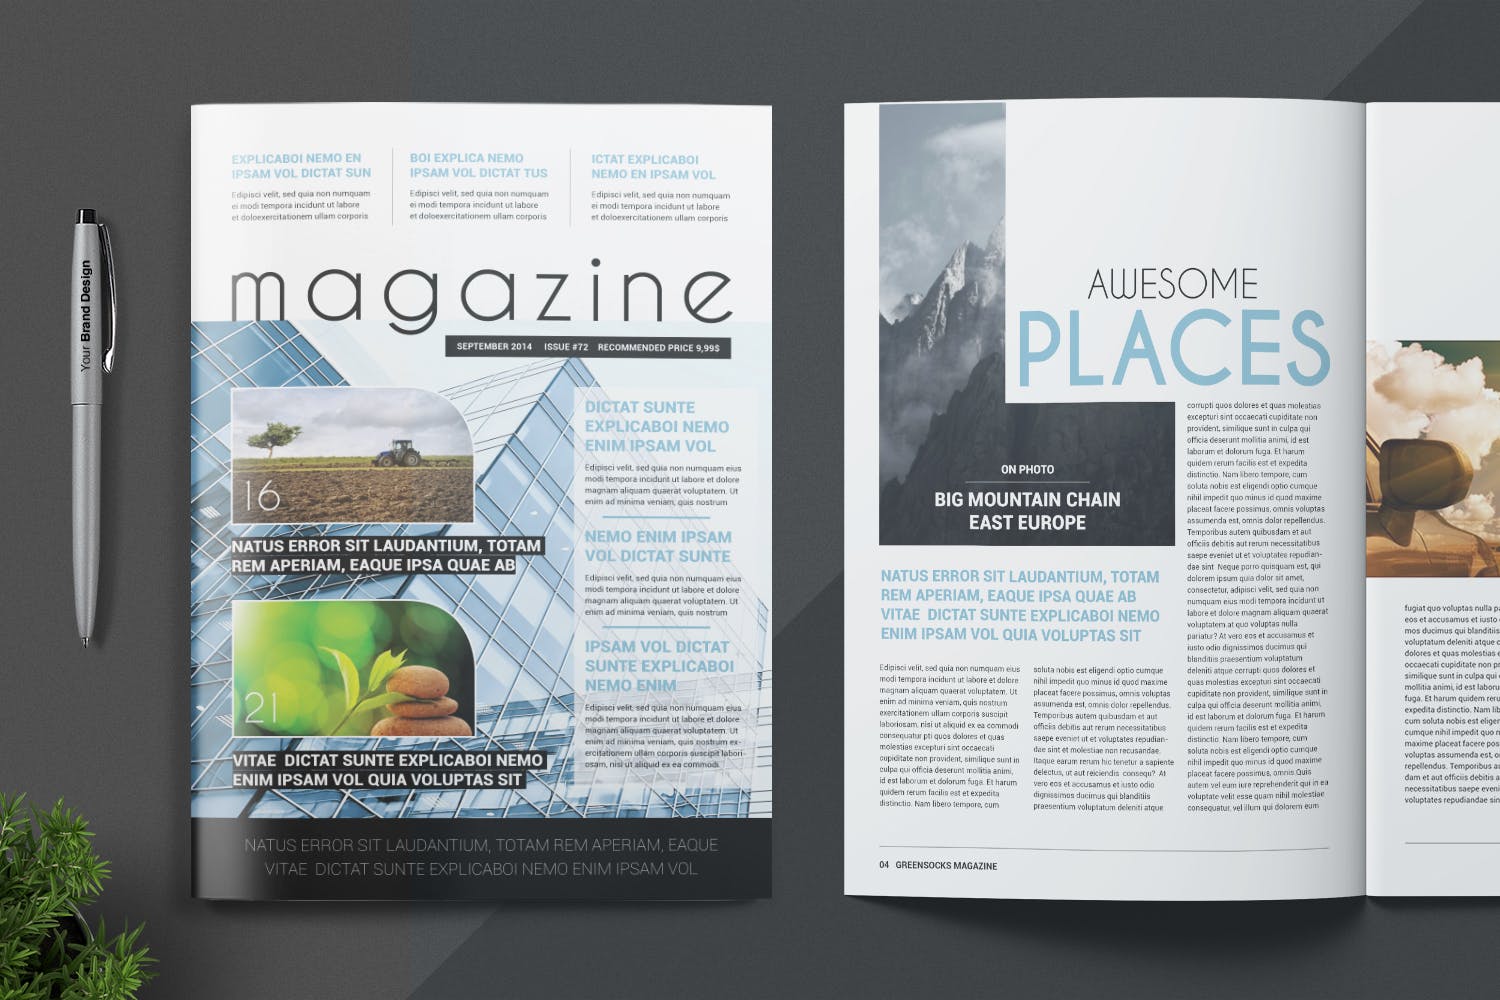 农业/自然/科学主题大洋岛精选杂志排版设计模板 Magazine Template插图